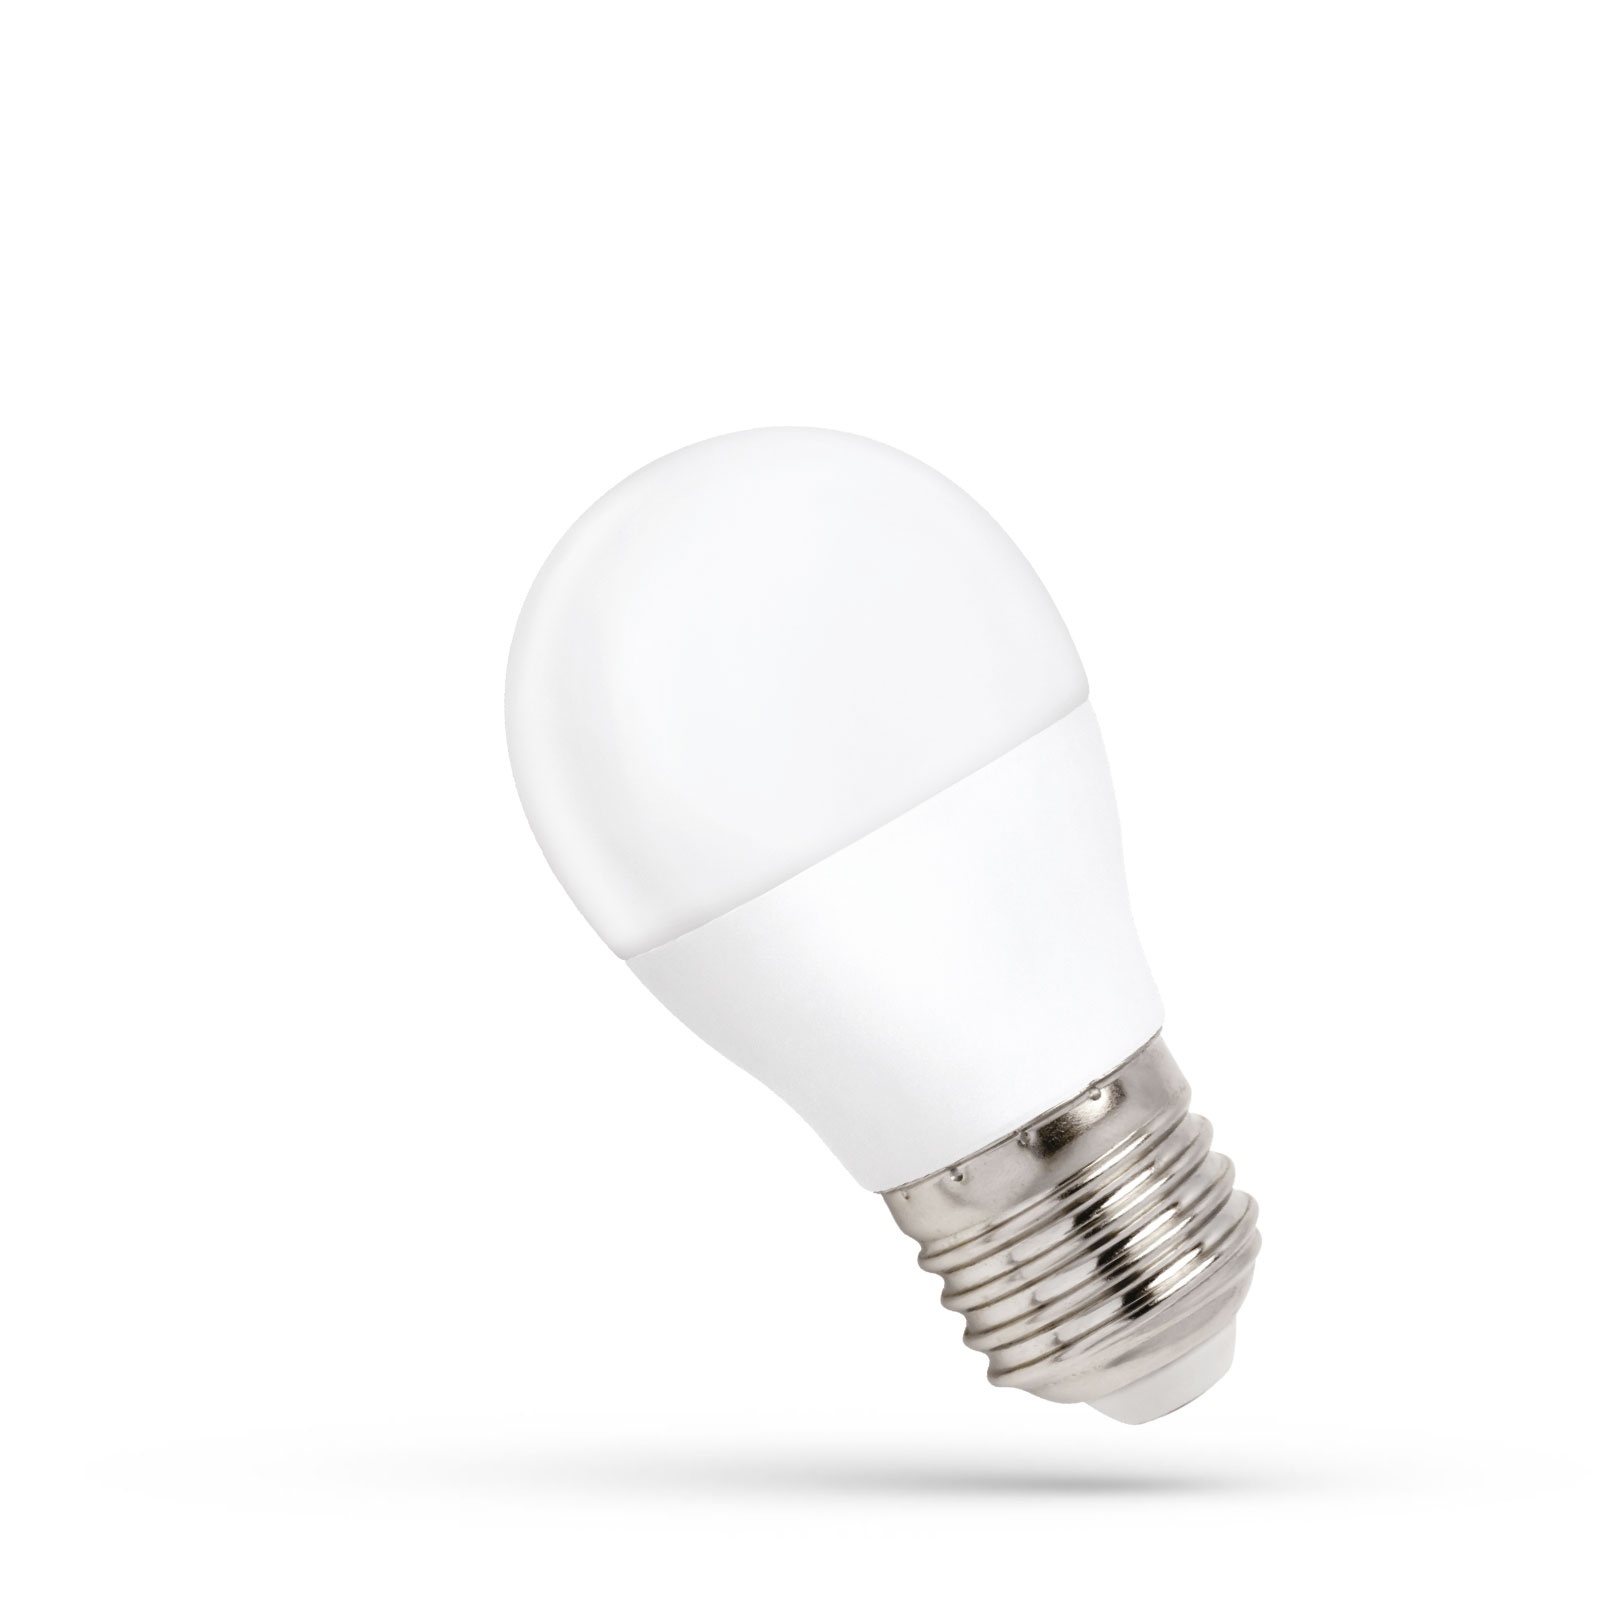 LED Lamp E27 fitting - G45 - 4000K helder wit - 8W vervangt 50W - Ledpanelendiscounter.nl